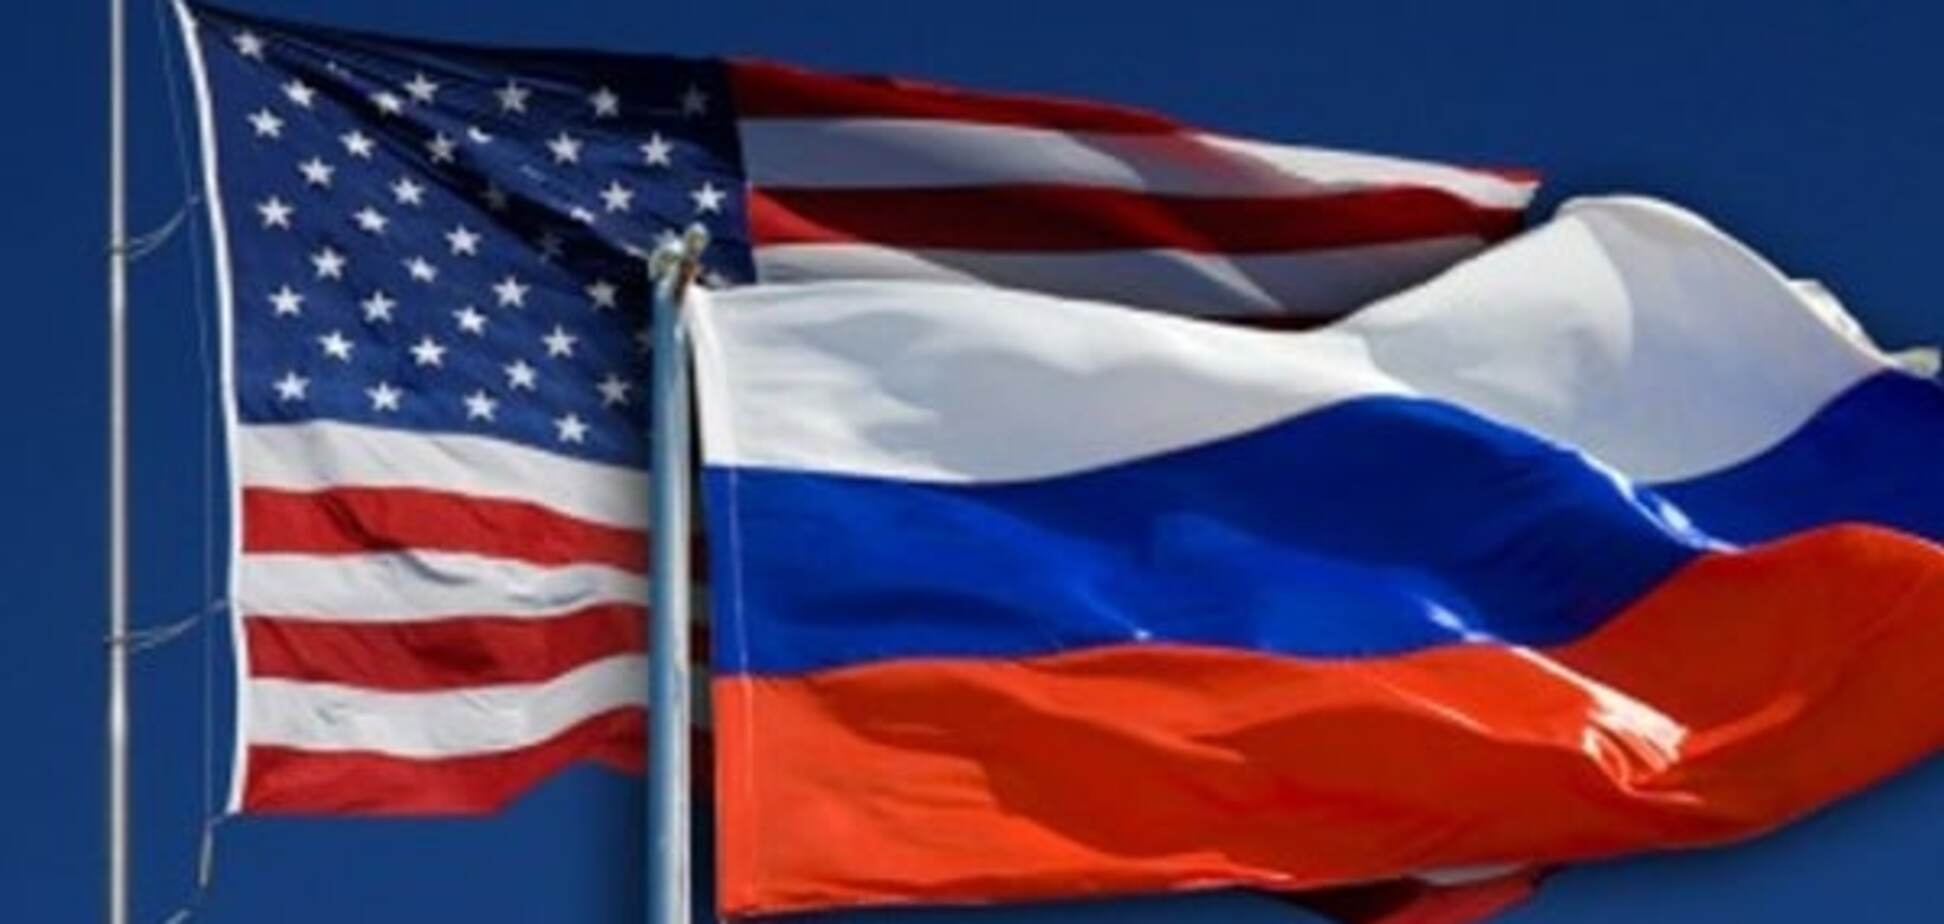 Допритеснялись: в США объяснили закрытие консульств России